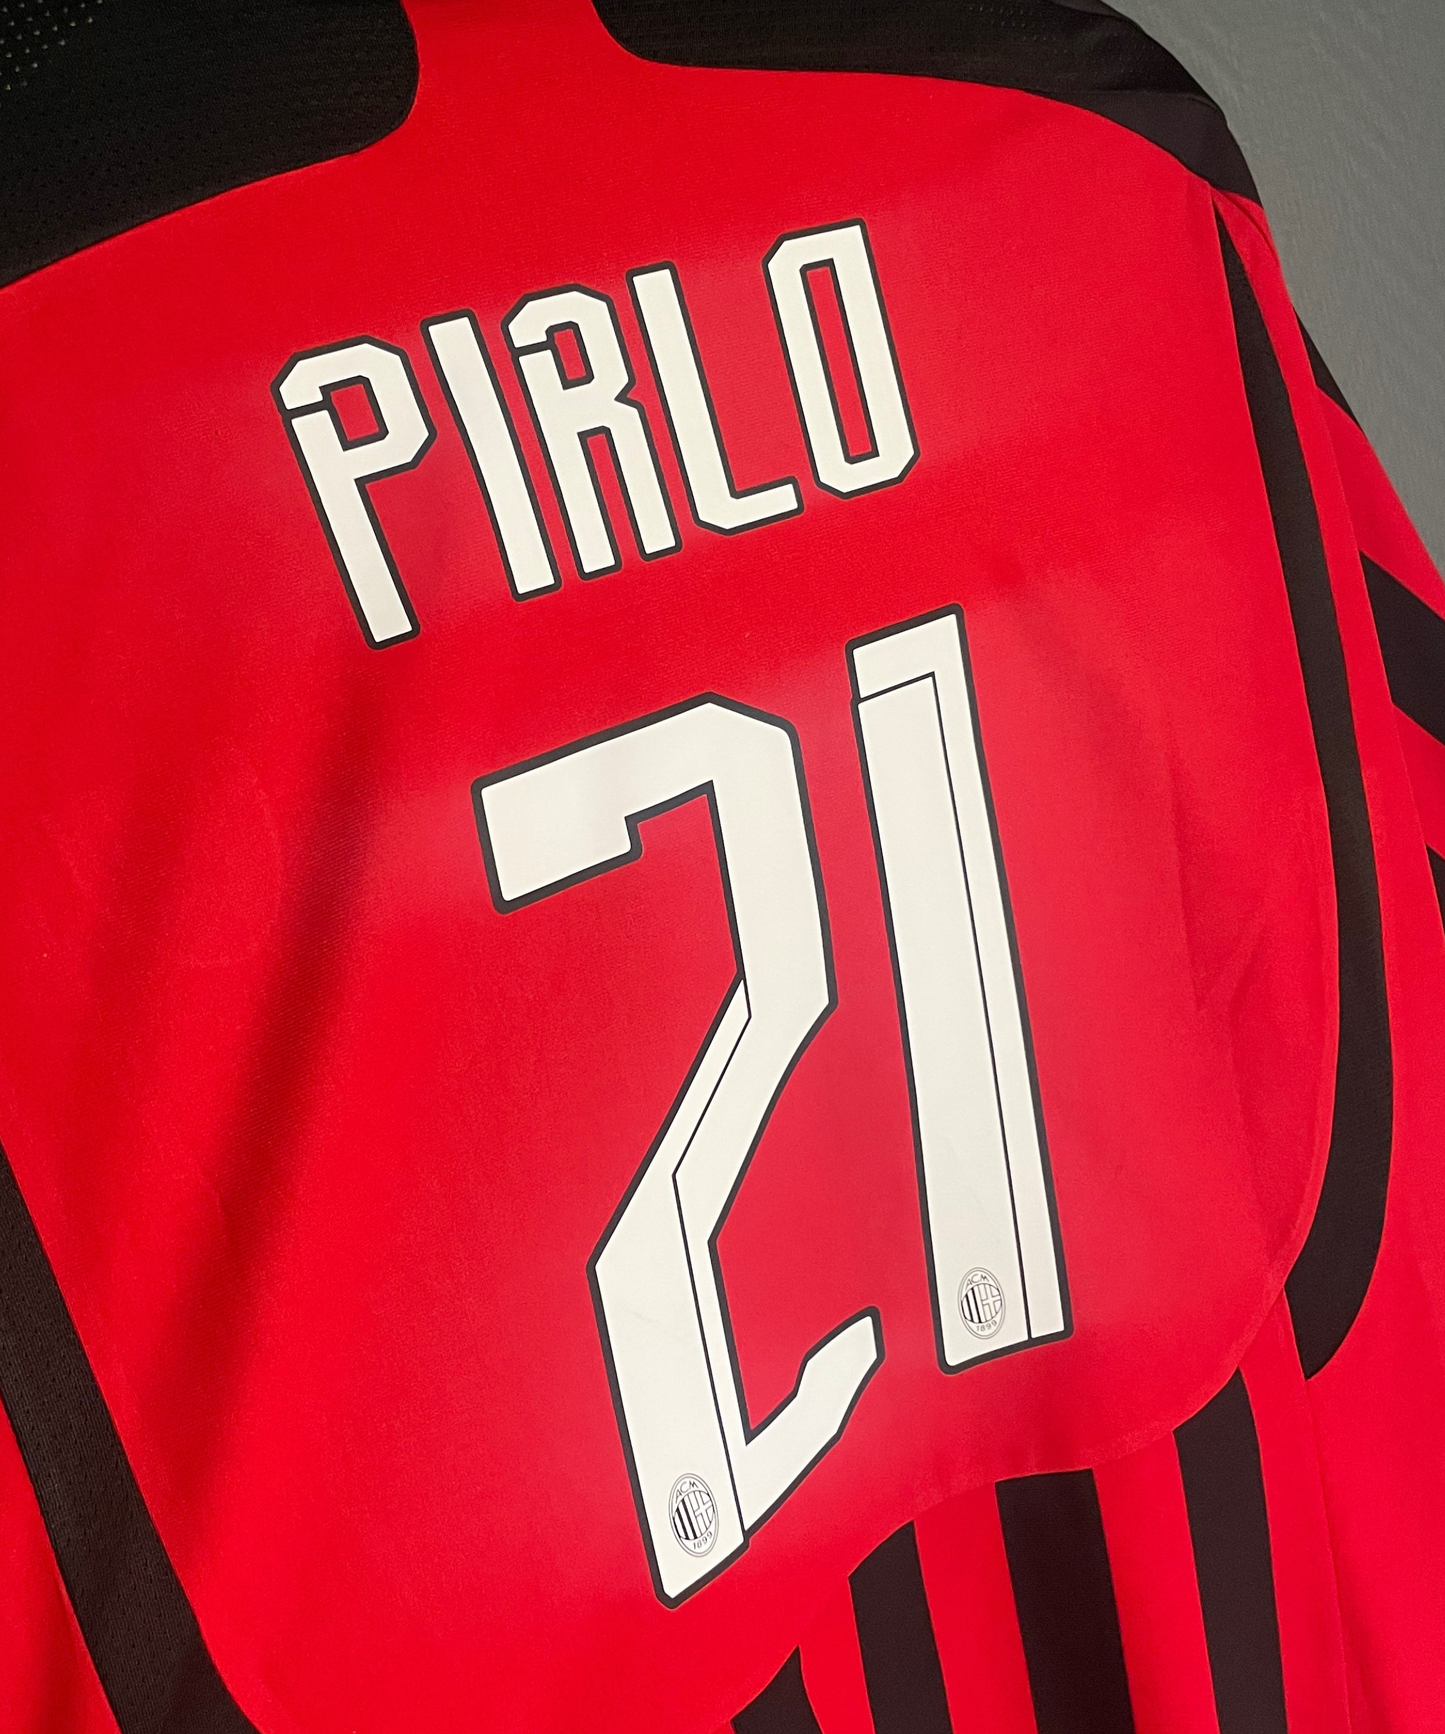 AC Milan 2007/08 Pirlo Home Kit (L)